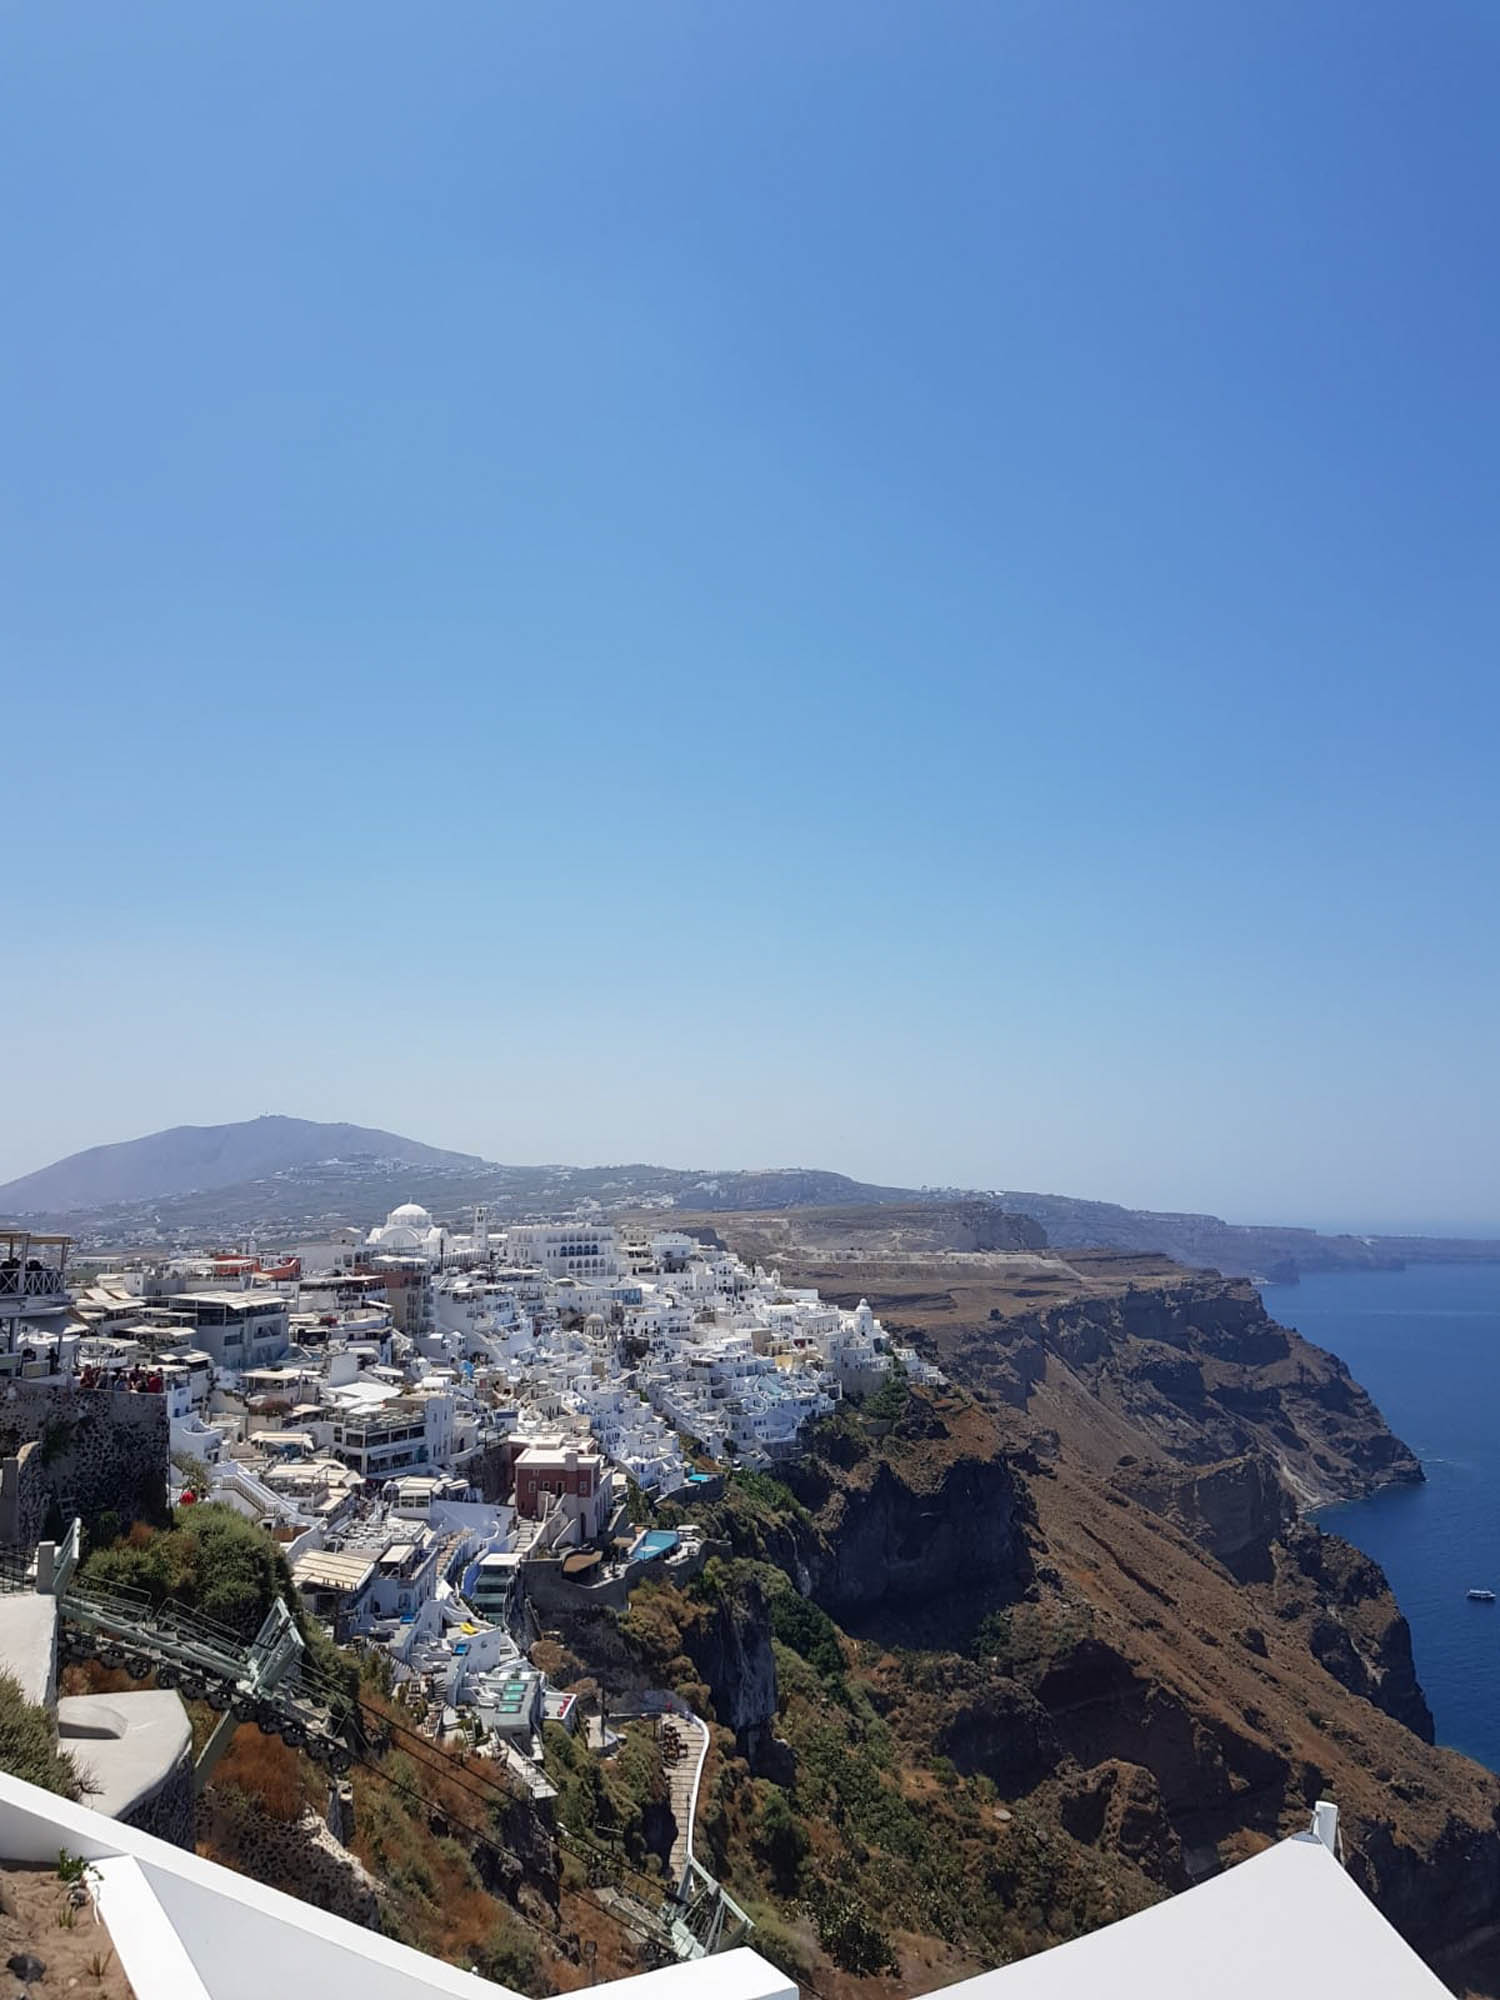 widok na Firę - stolicę wyspy Santorini, widok na miasto i morze, niebieskie niebo